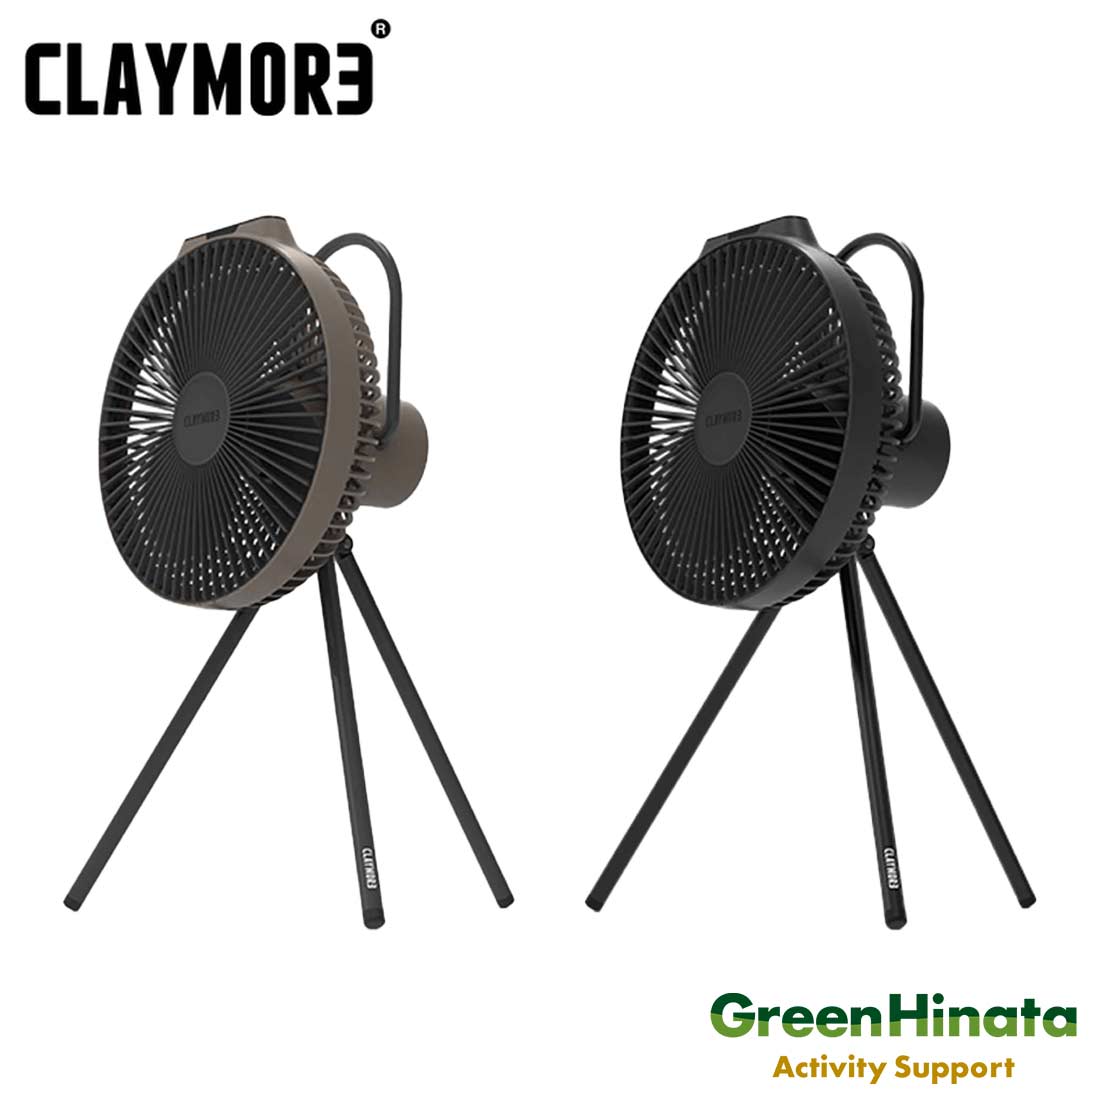 【国内正規品】 クレイモア ファン ブイ 1040 扇風機 1040 GLAYMORE FAN V1040画像